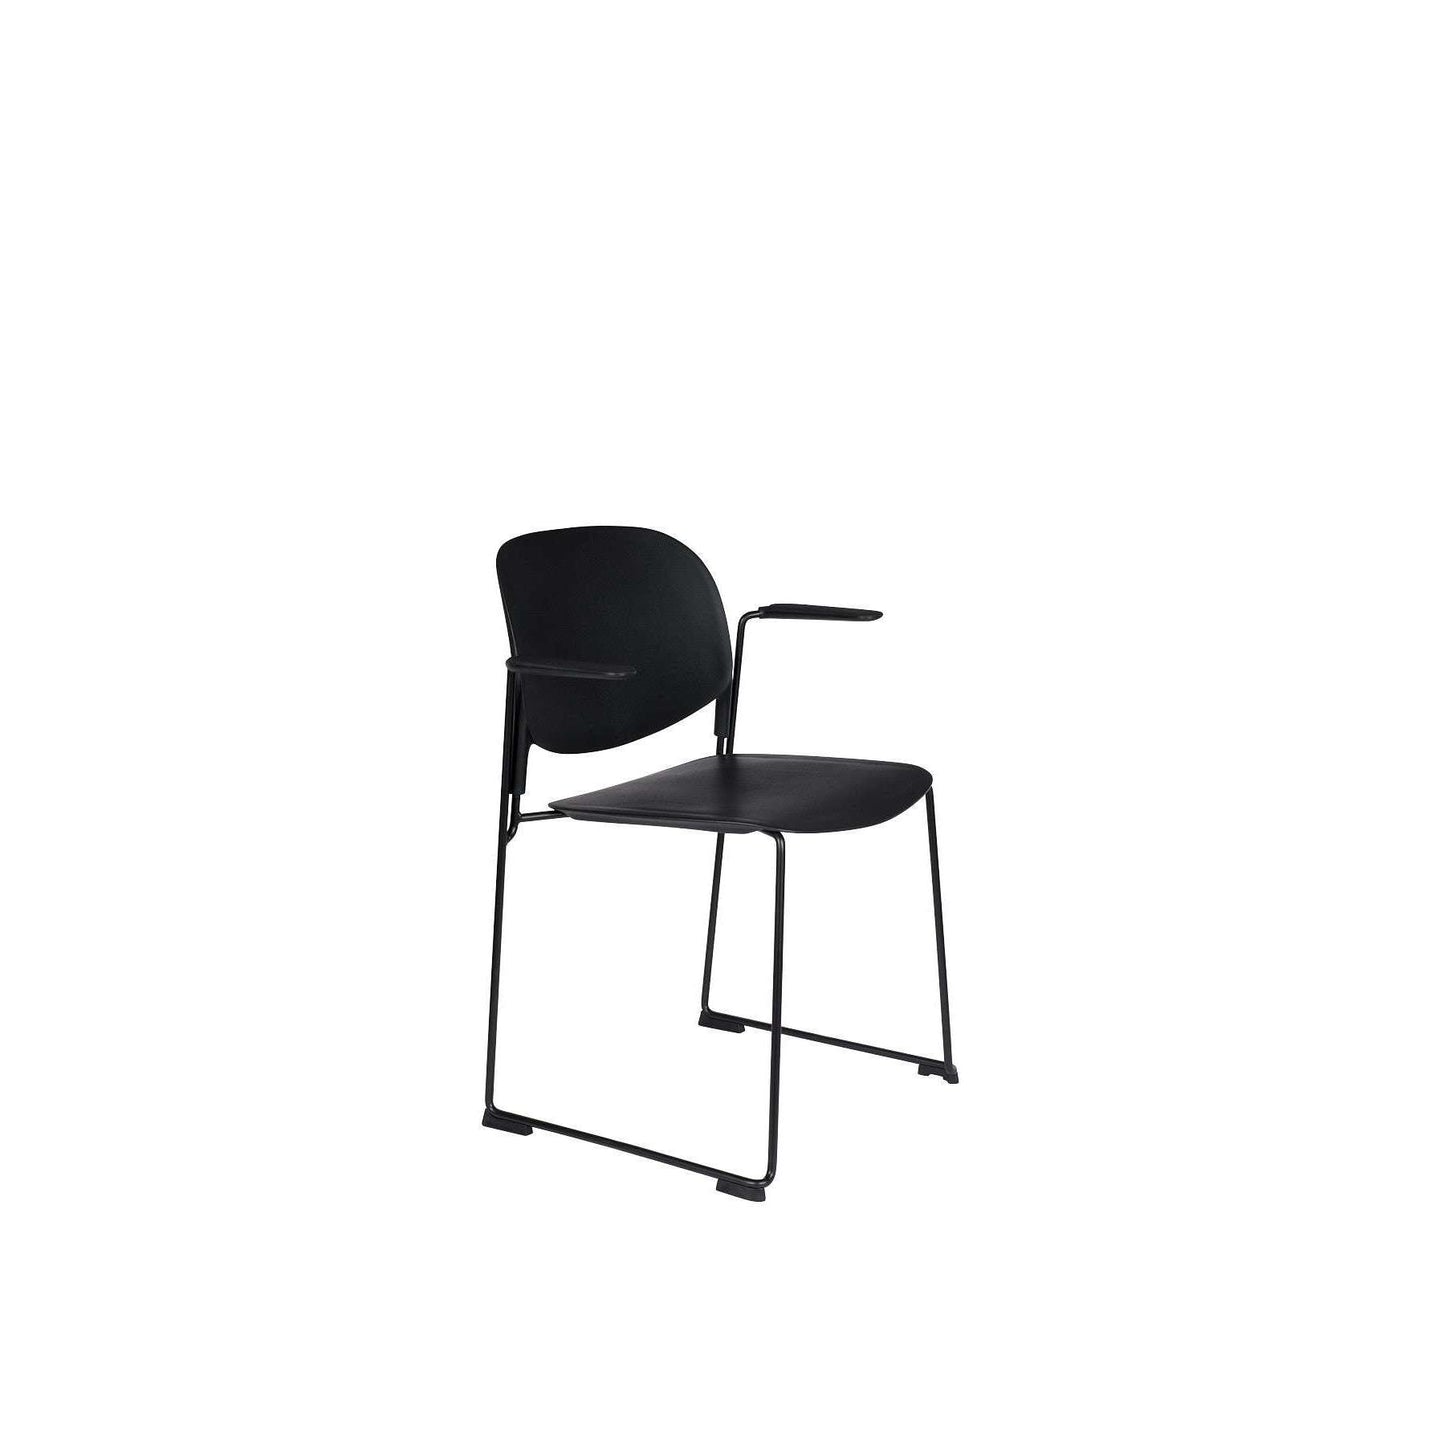 Staerkk stoel met armleuningen stacks zwart 53 x 63,5 x 80,5 cm